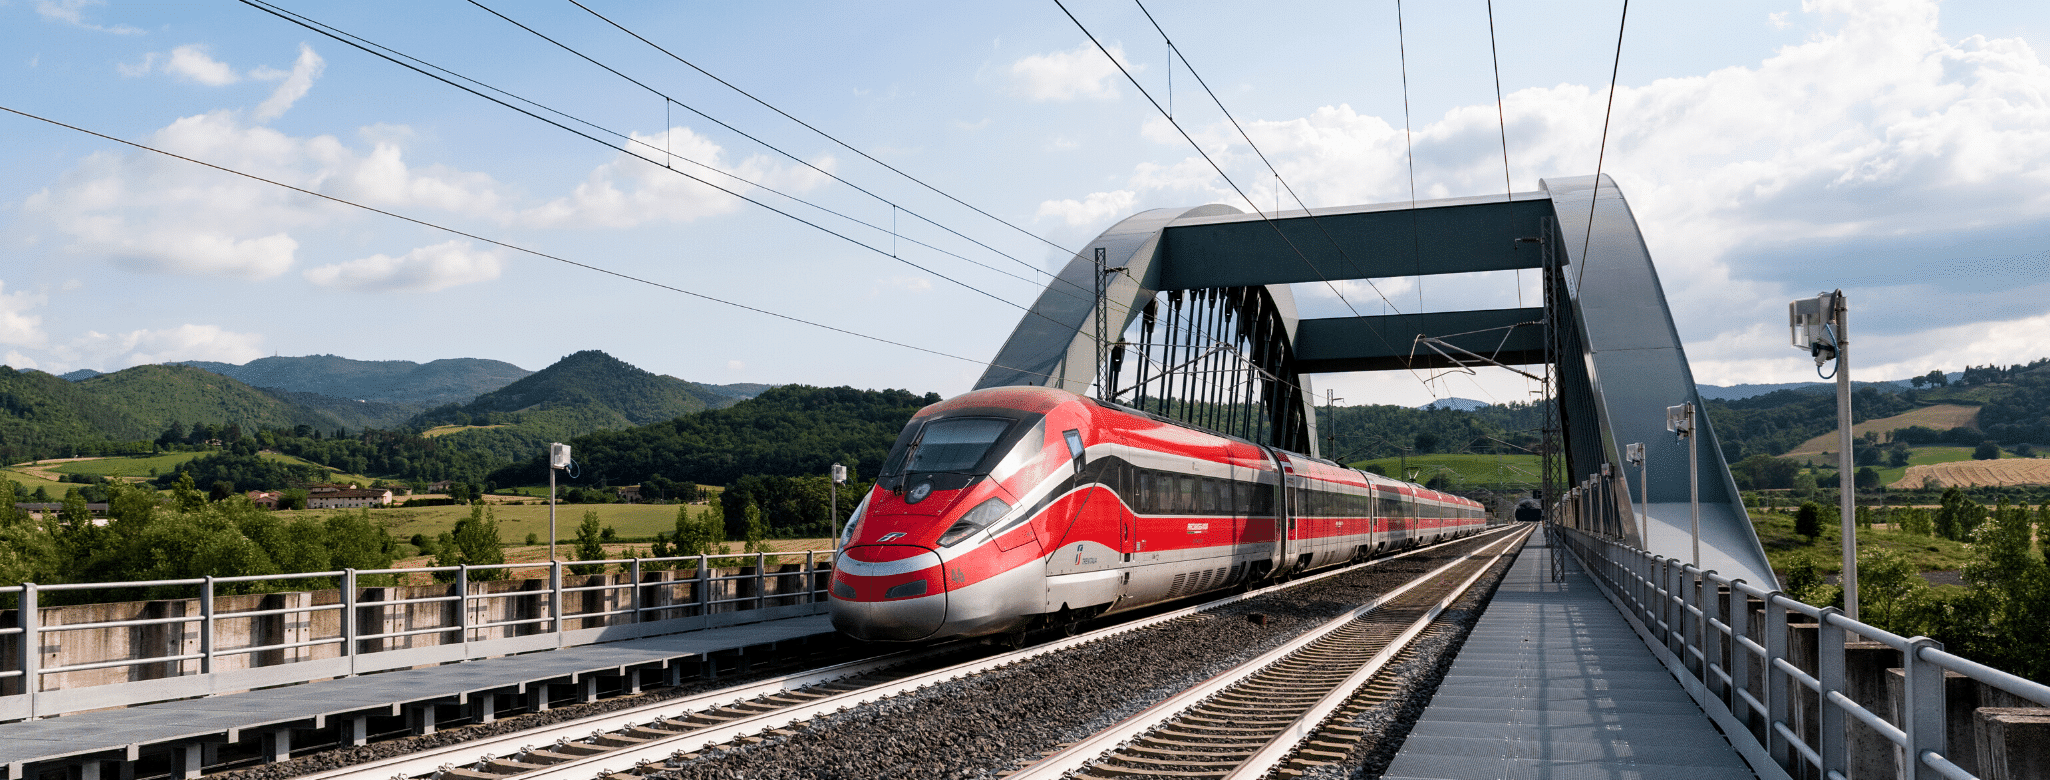 Trenitalia inaugurou trem que liga Milão a Paris